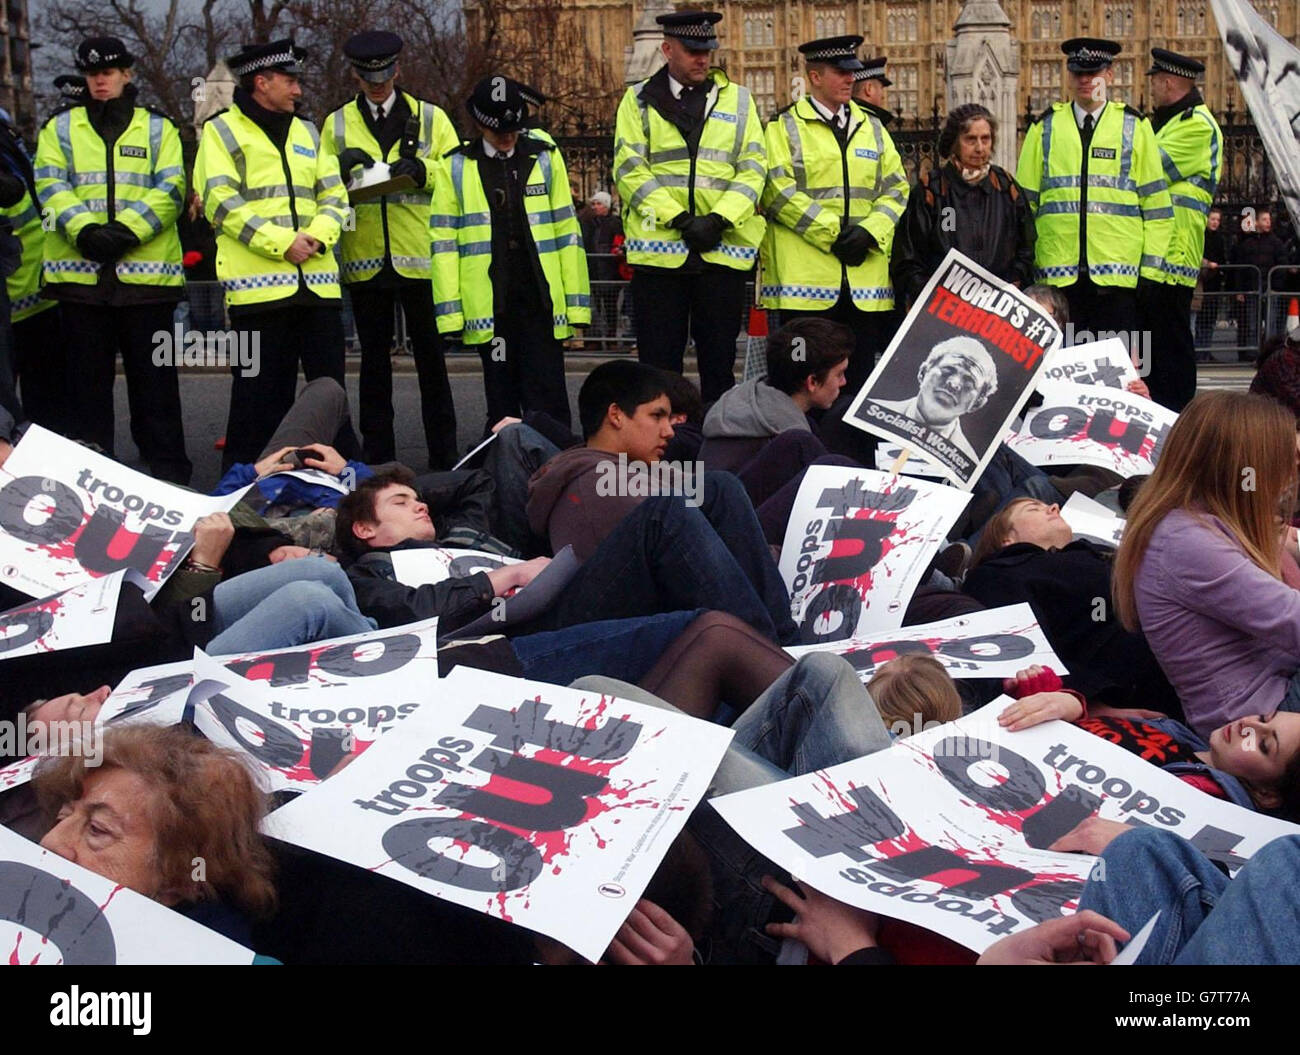 Dutzende von Antikriegsdemonstranten, die an einem Masseneinfall außerhalb des Parlaments teilnehmen. Die Demonstranten fordern den Abzug britischer Truppen aus dem Irak. Mit Parolen und Transparenten blockierten die Aktivisten während der Veranstaltung, die von der Stop the war Coalition und der CND organisiert wurde, zwei Fahrspuren. Stockfoto